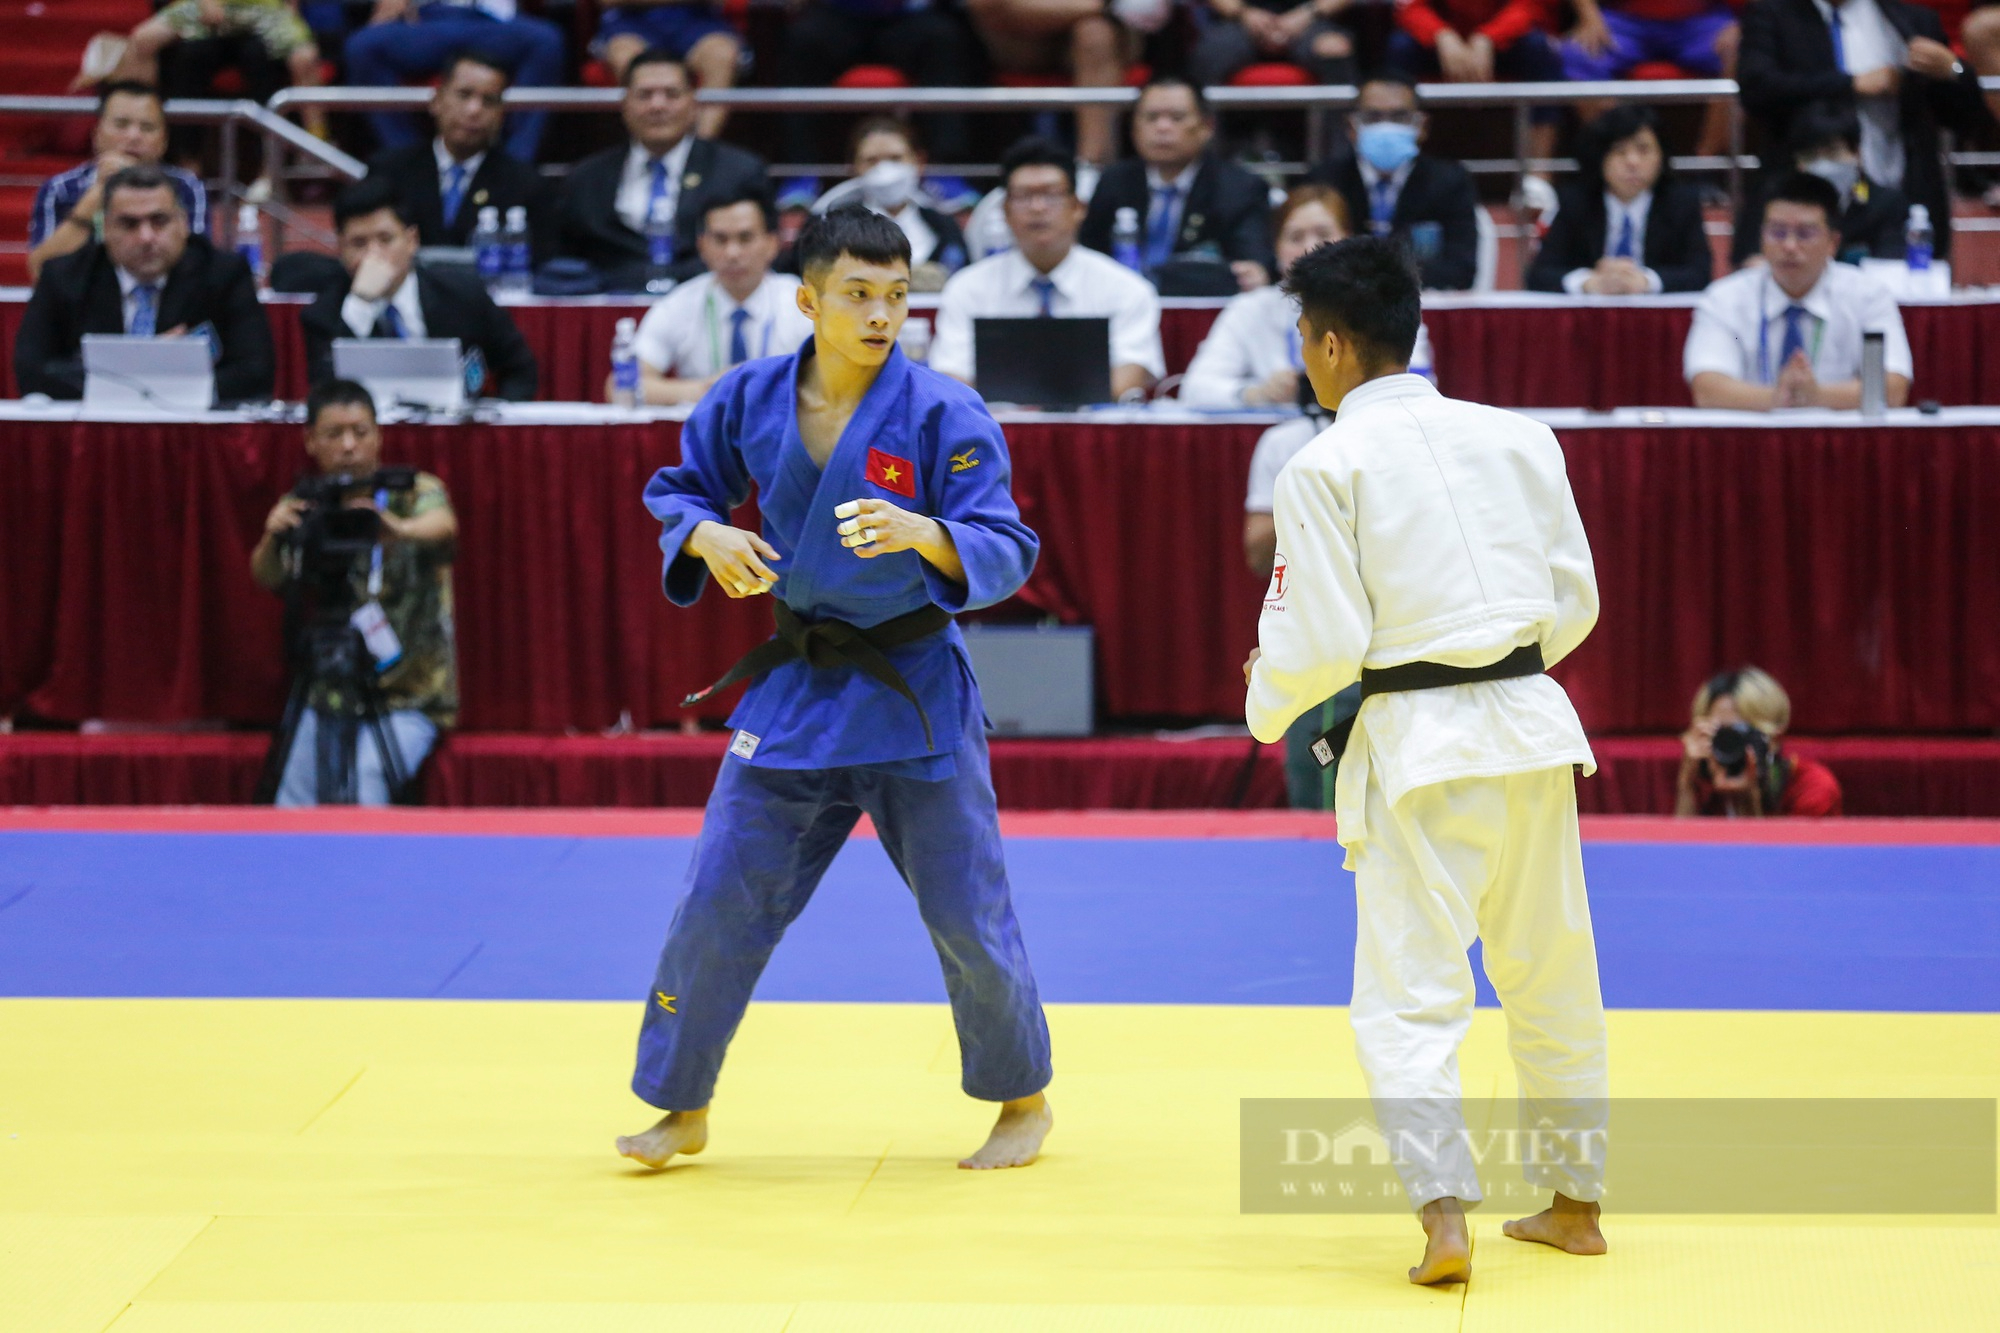 Võ sĩ Judo Việt Nam khóa chặt đối thủ và giành chiến thắng bằng luật bàn thắng vàng - Ảnh 1.